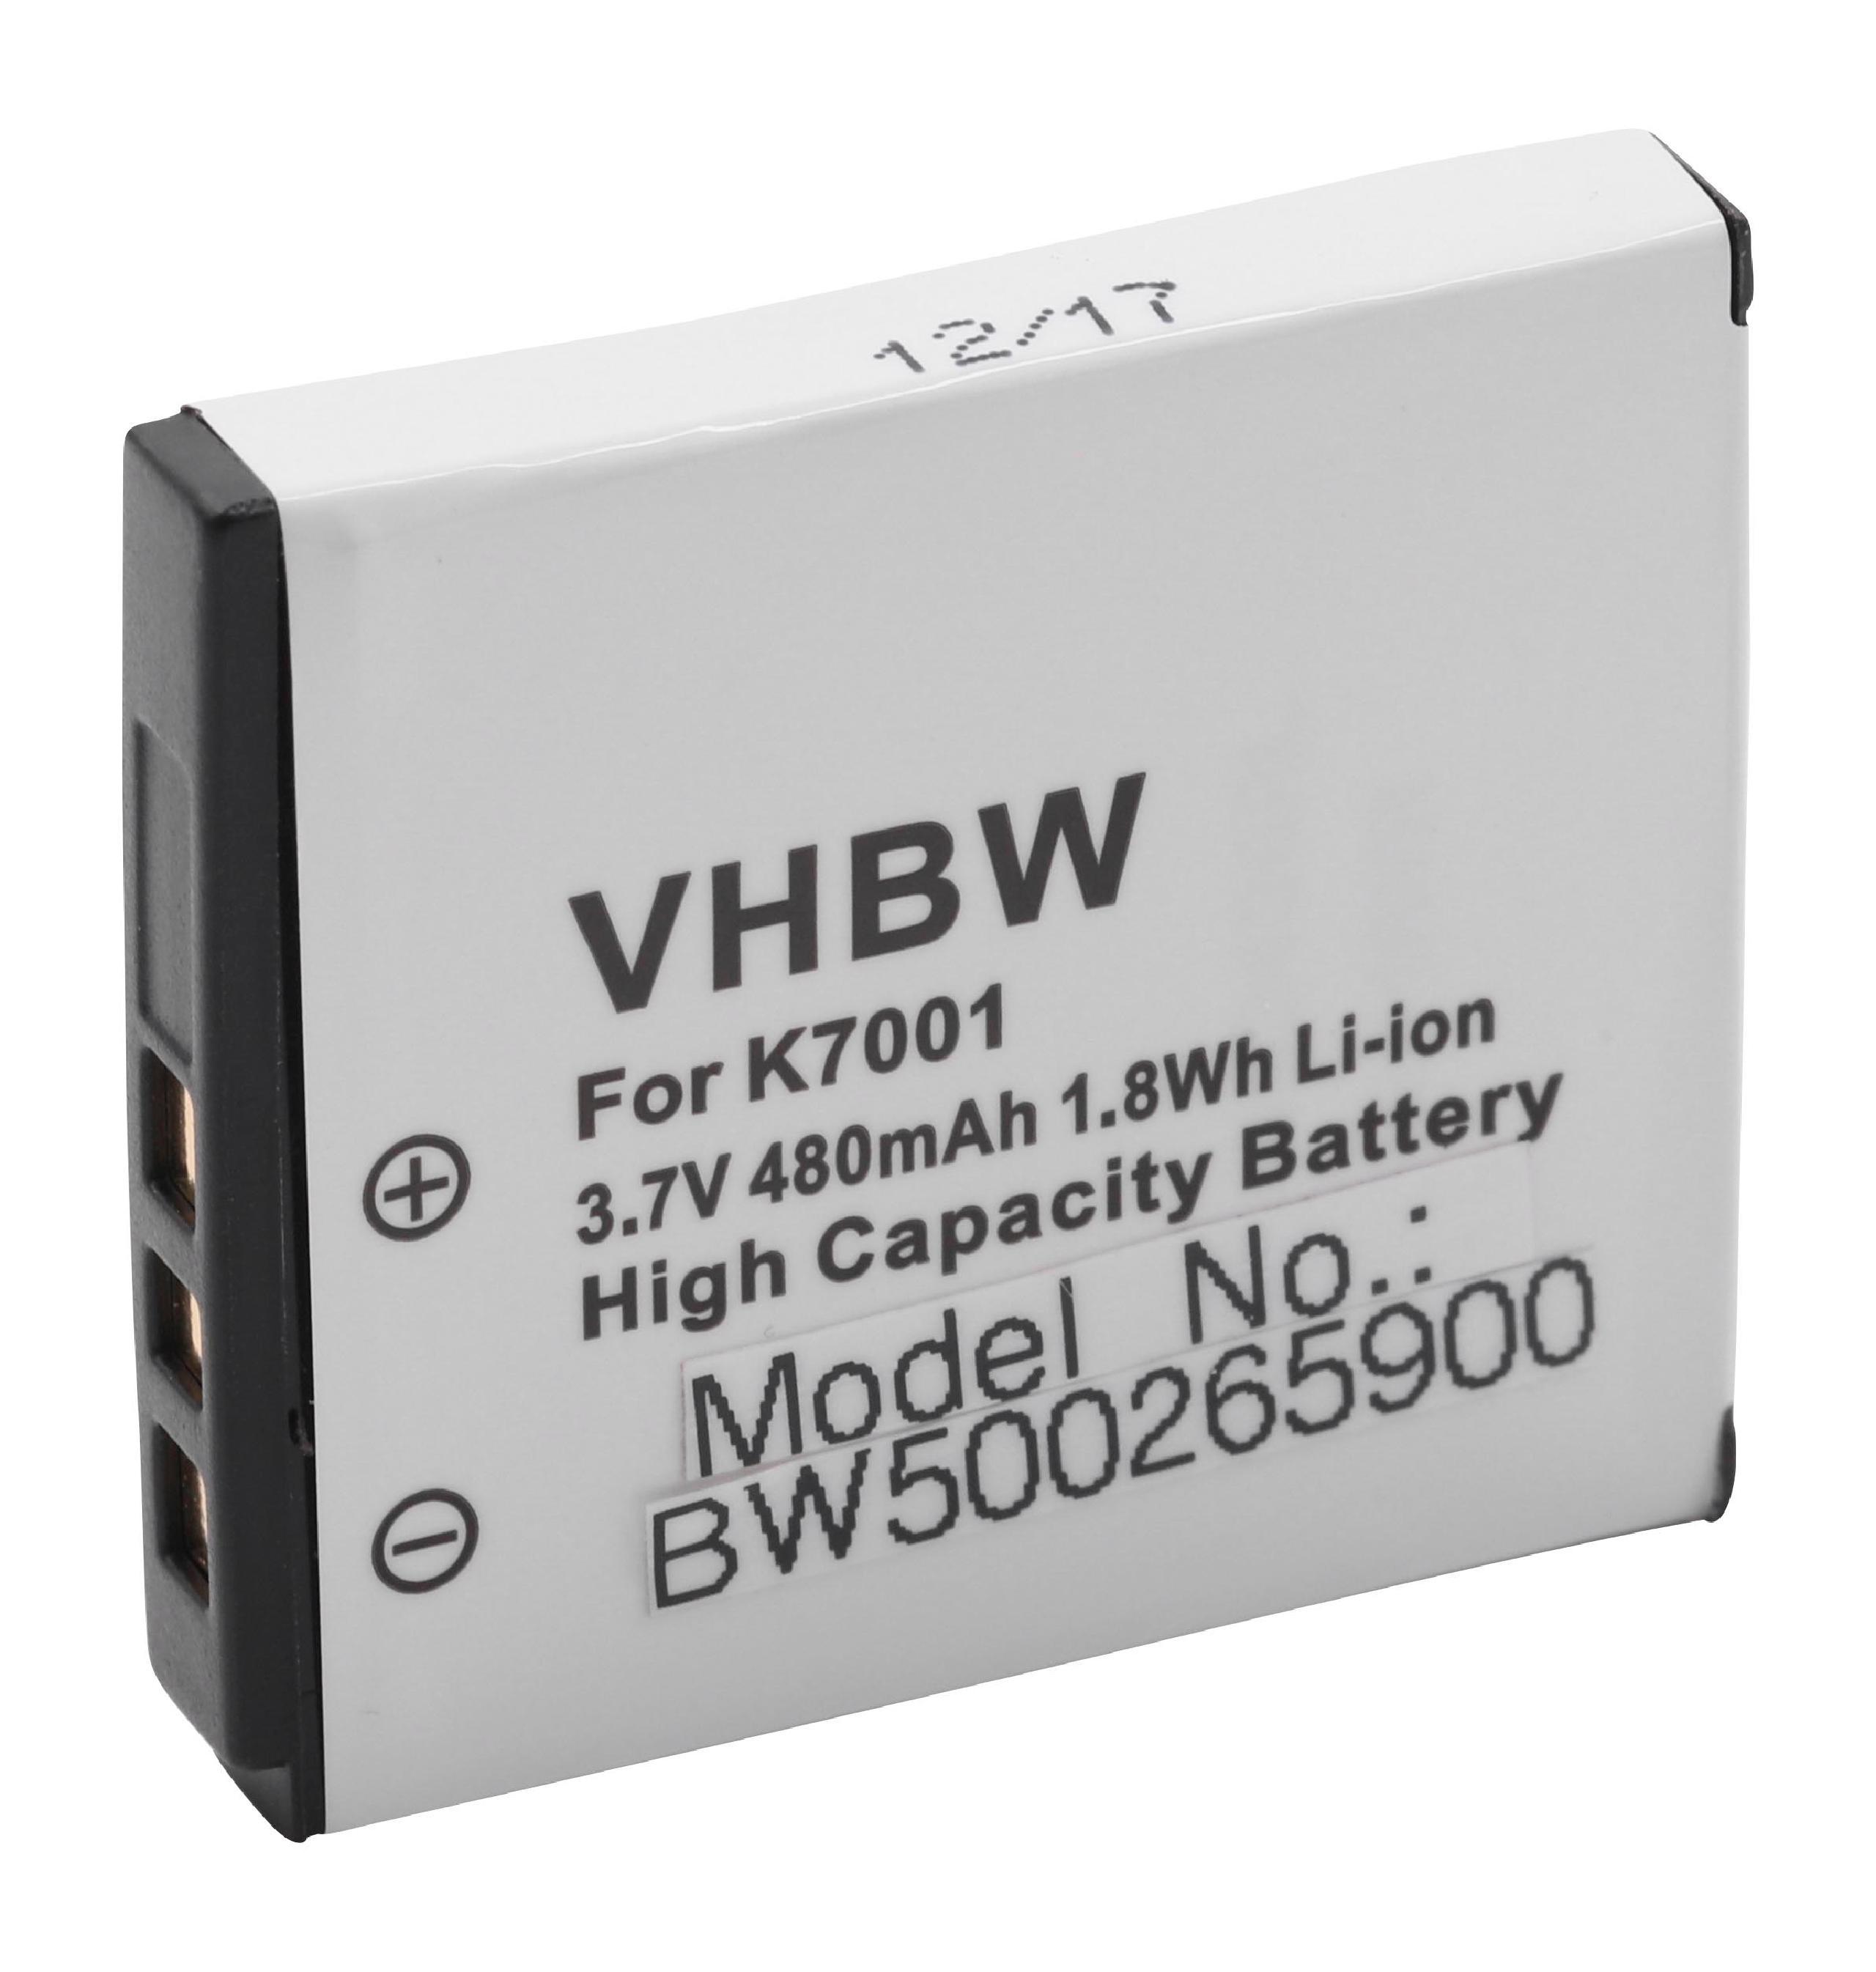 VHBW kompatibel mit Oucca 3.6 Li-Ion Kamera, DC-A1200, - 650 DC-T300, Akku Volt, T-1200